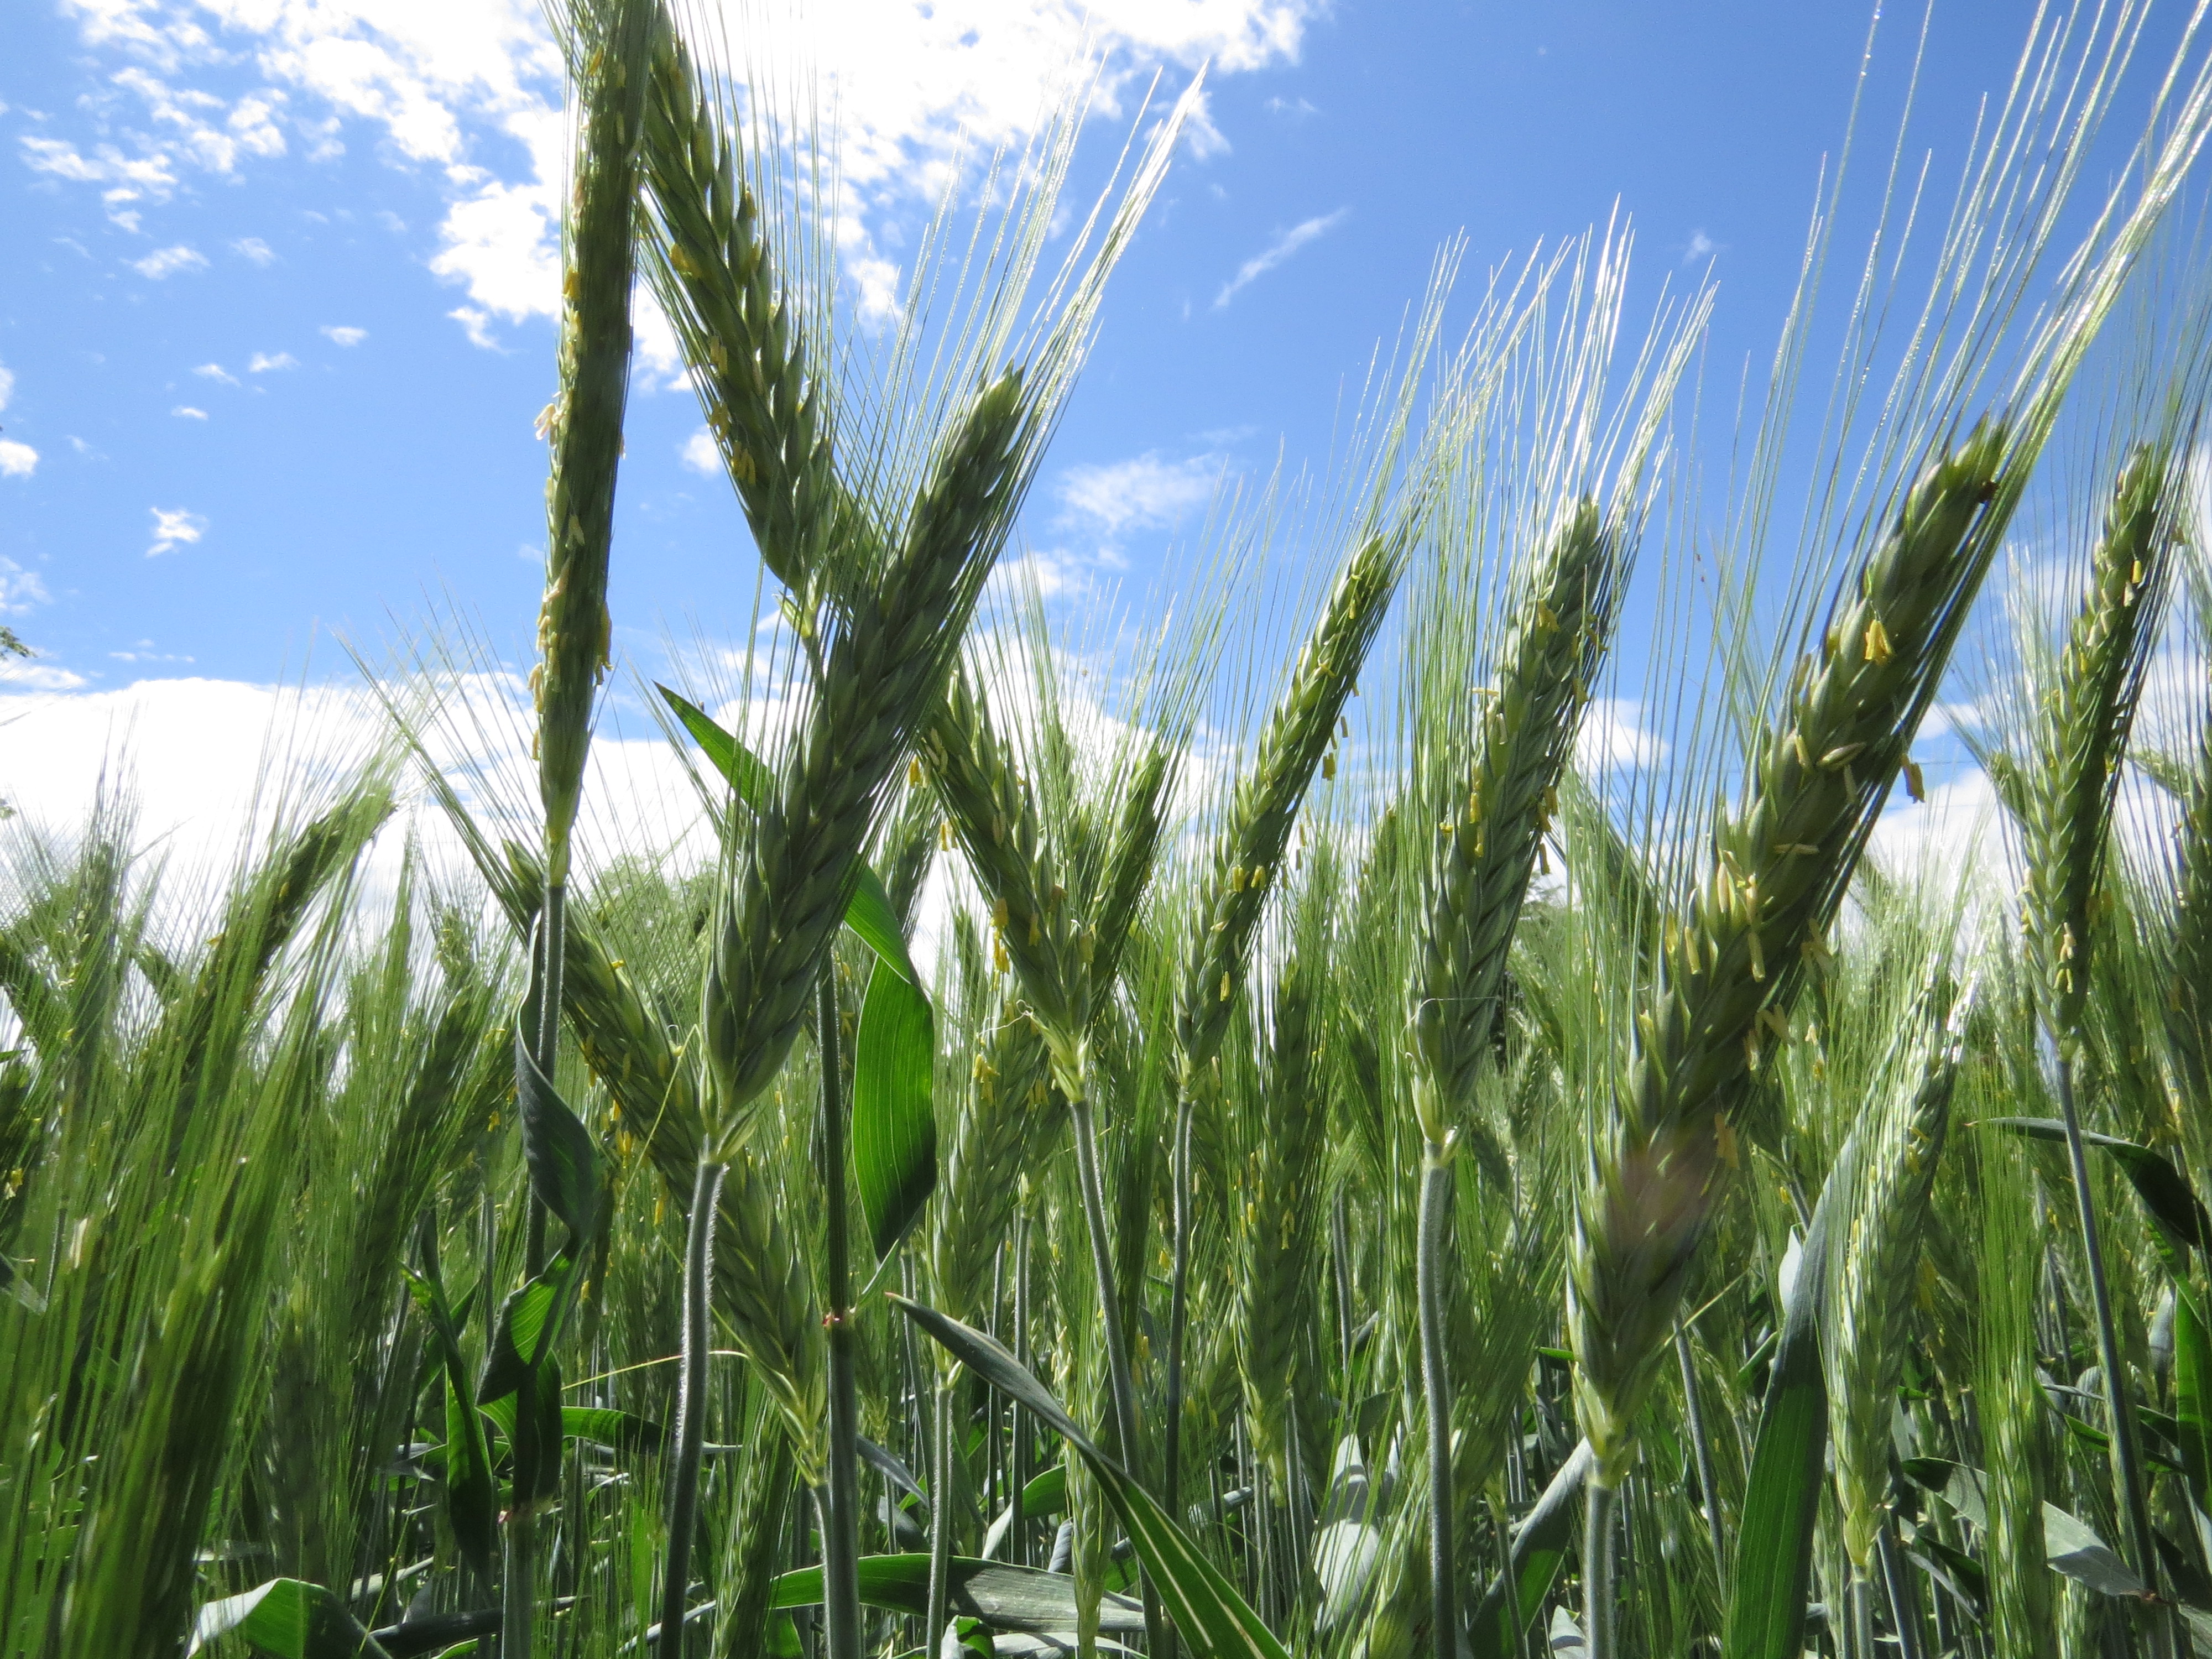 Za kakovosten pridelek ozimne pšenice je prehranjenost z dušikom ključna. Izvid Nmin testa pomaga pri odločitvi, koliko dušika v dognojevanju uporabiti. Foto Igor Škerbot